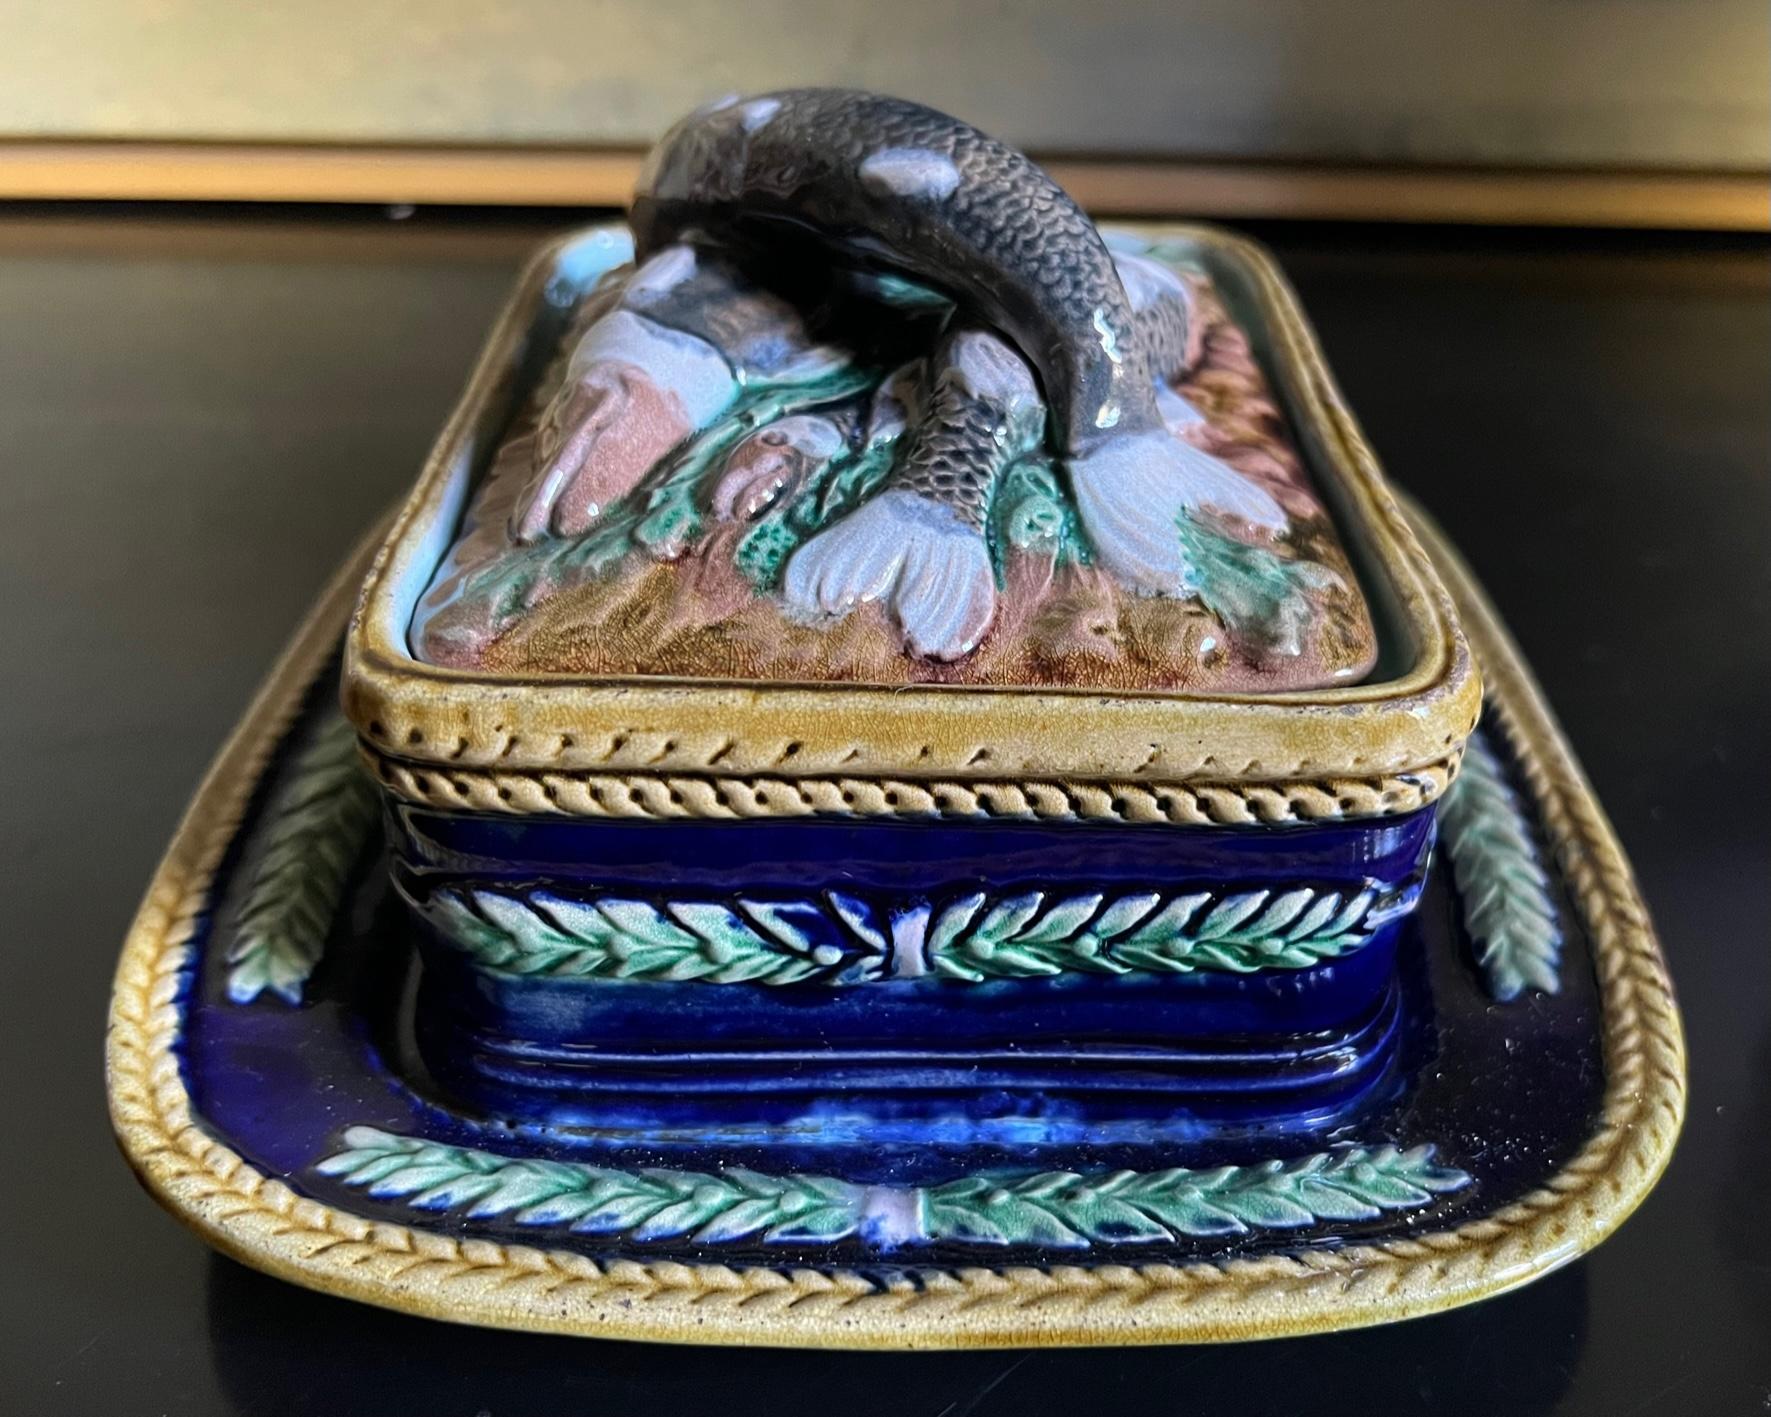 Majolika-Sardinendose mit Deckel, hergestellt in England im späten 19. Jahrhundert. Der Deckel ist in Hochrelief mit Fischen auf einem Bett aus senffarbenem Seetang geformt.  Die Dose ist von Hand kobaltblau bemalt und mit grünen Blättern verziert.